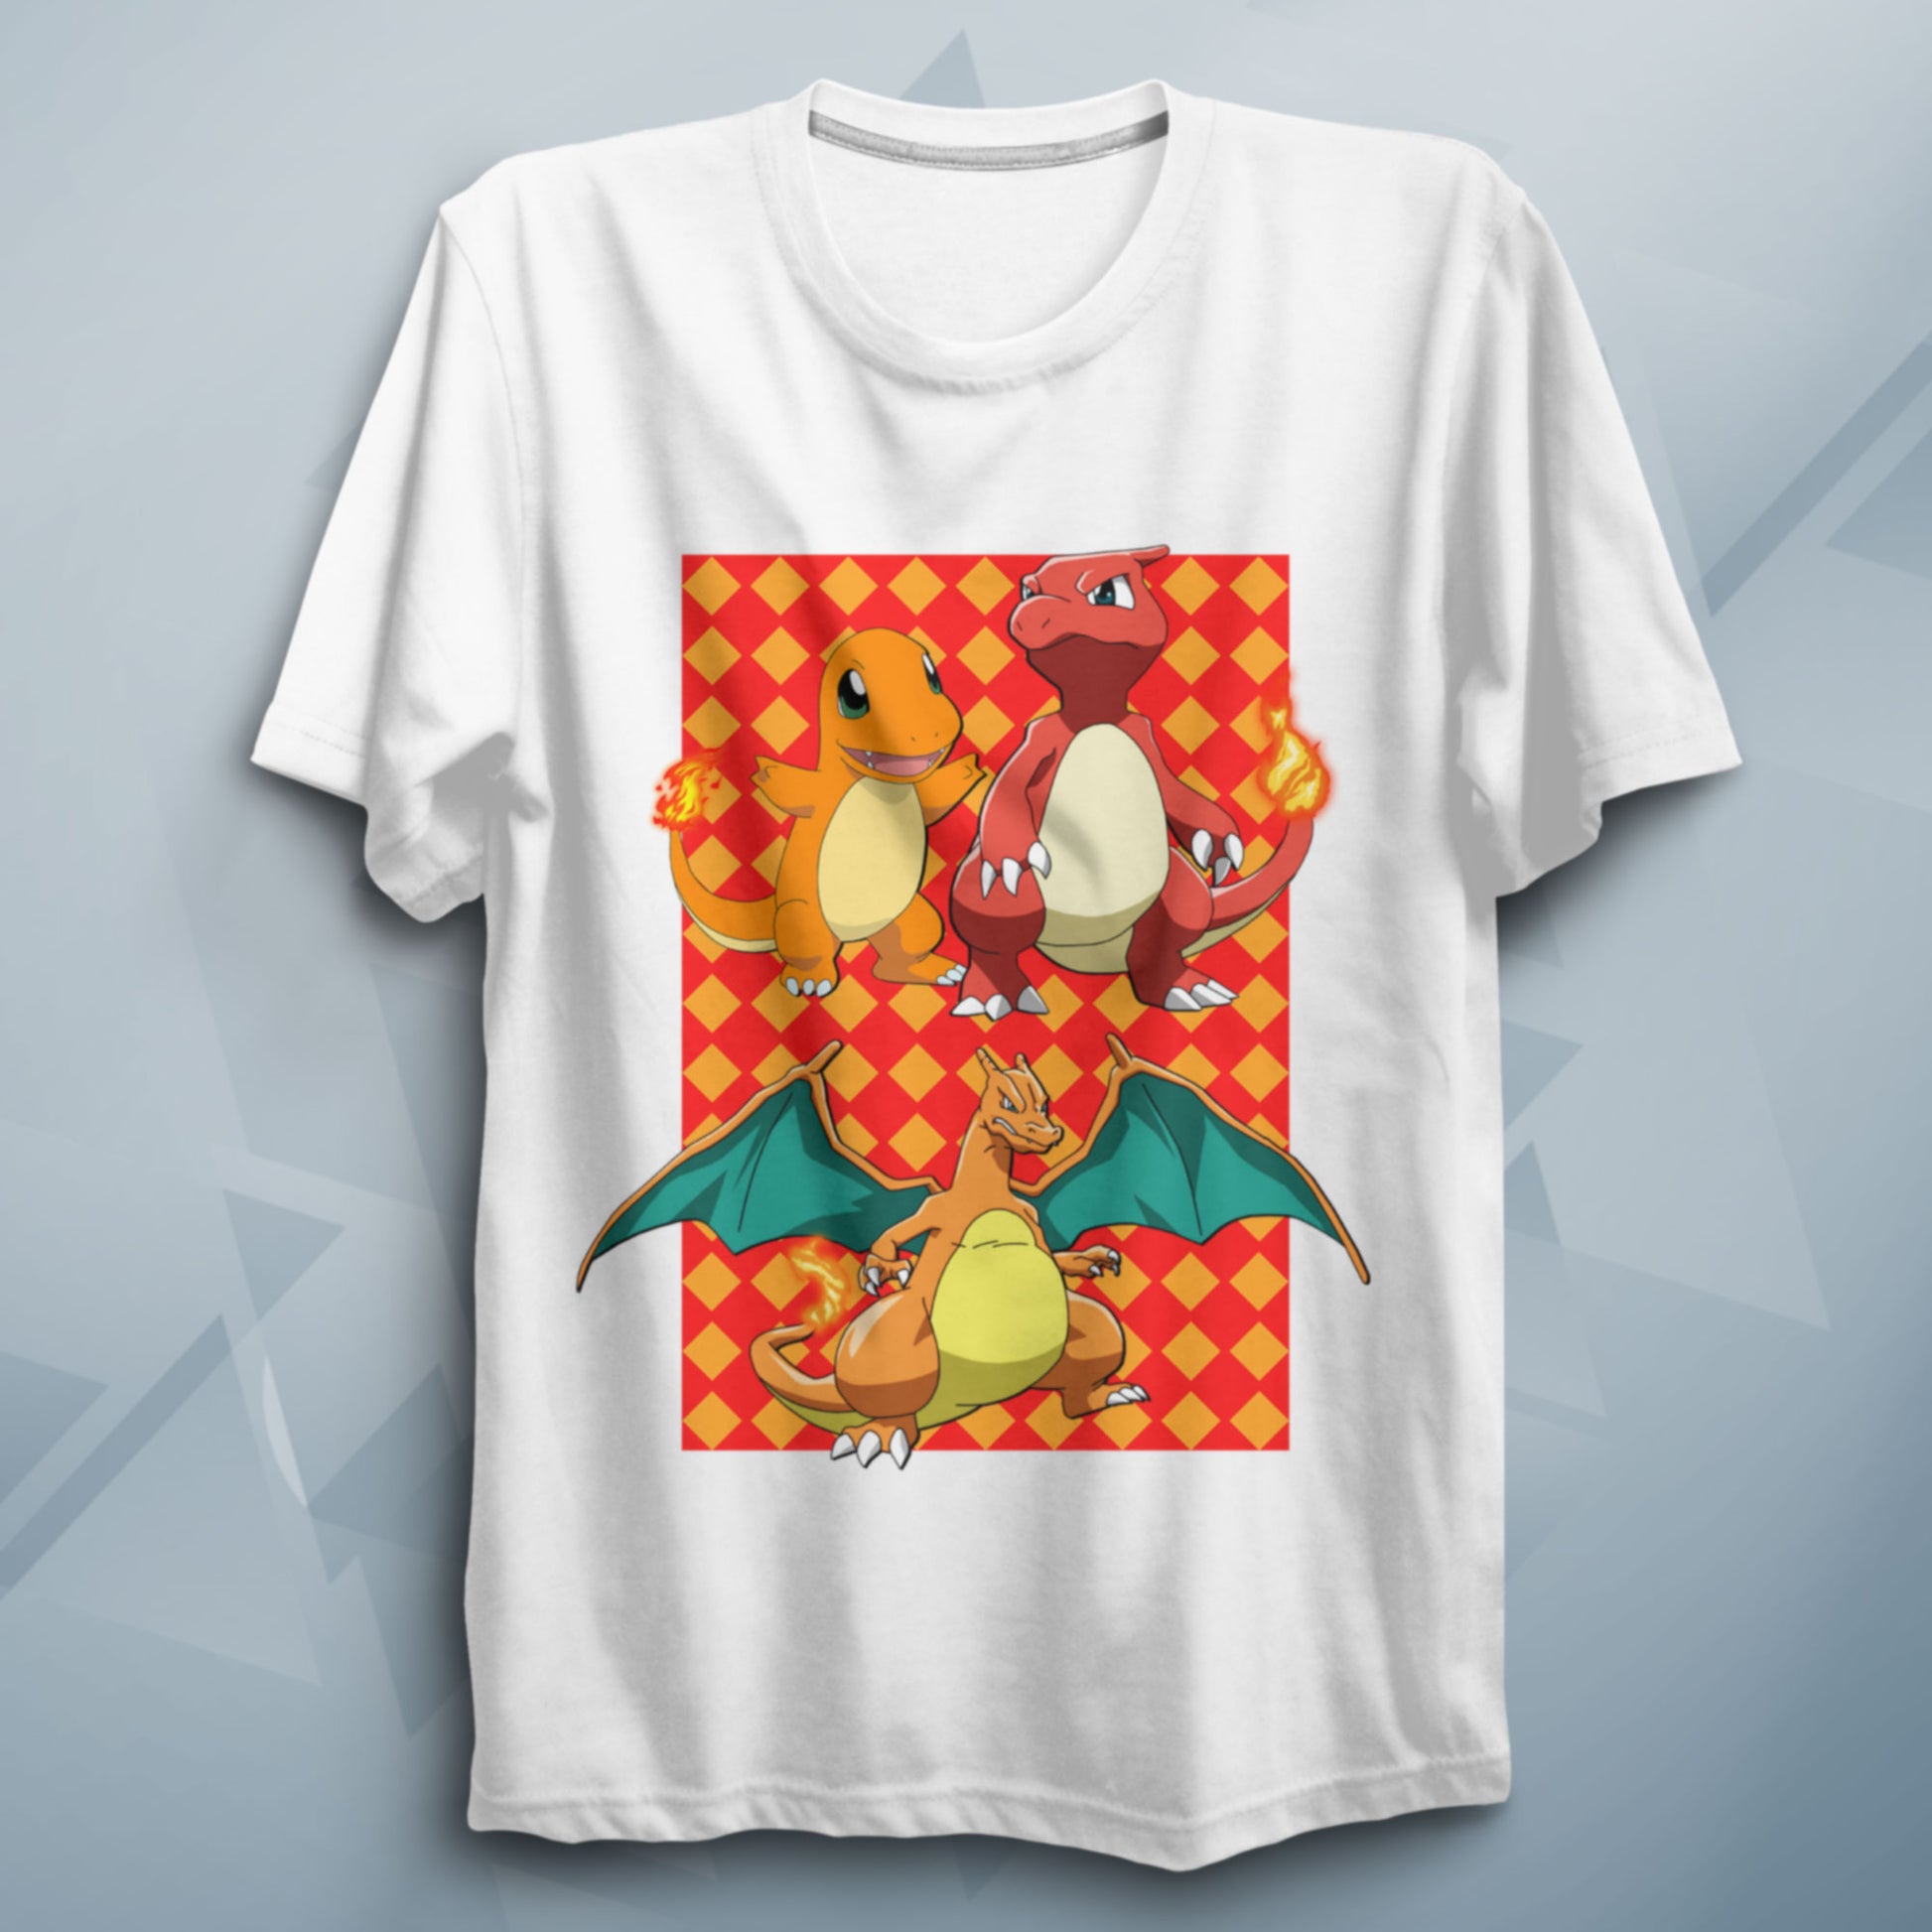 PKMN Charizard Evolution T Shirt Anime Shirt - FLUX DESIGNS